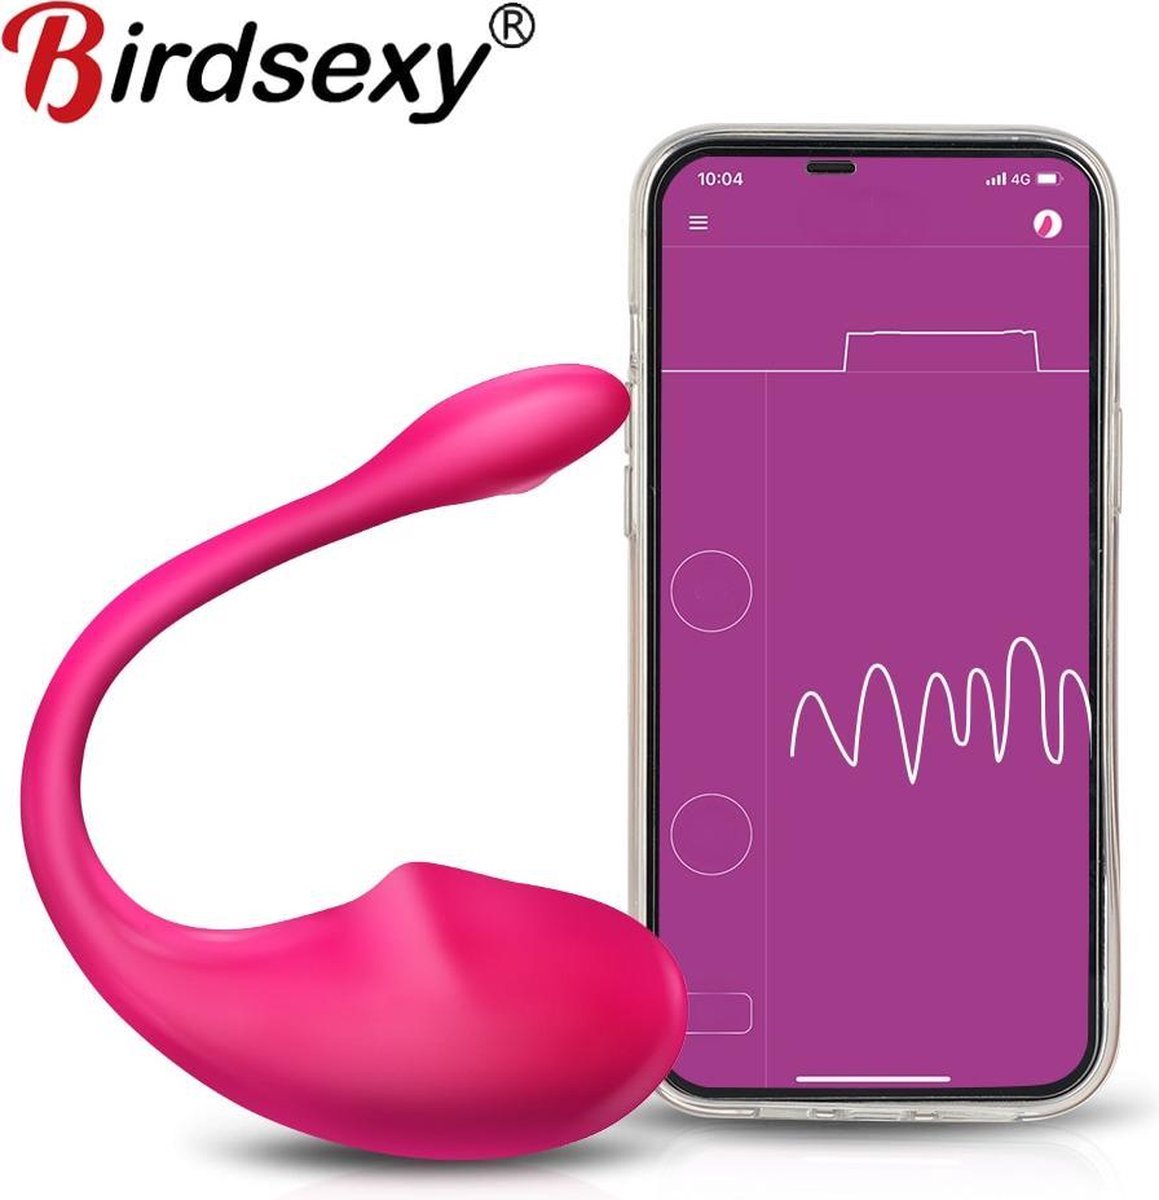 BirdSexy® Dildo Vibrator Voor Vrouwen - Seks Speeltje Voor Koppels - Met App foto